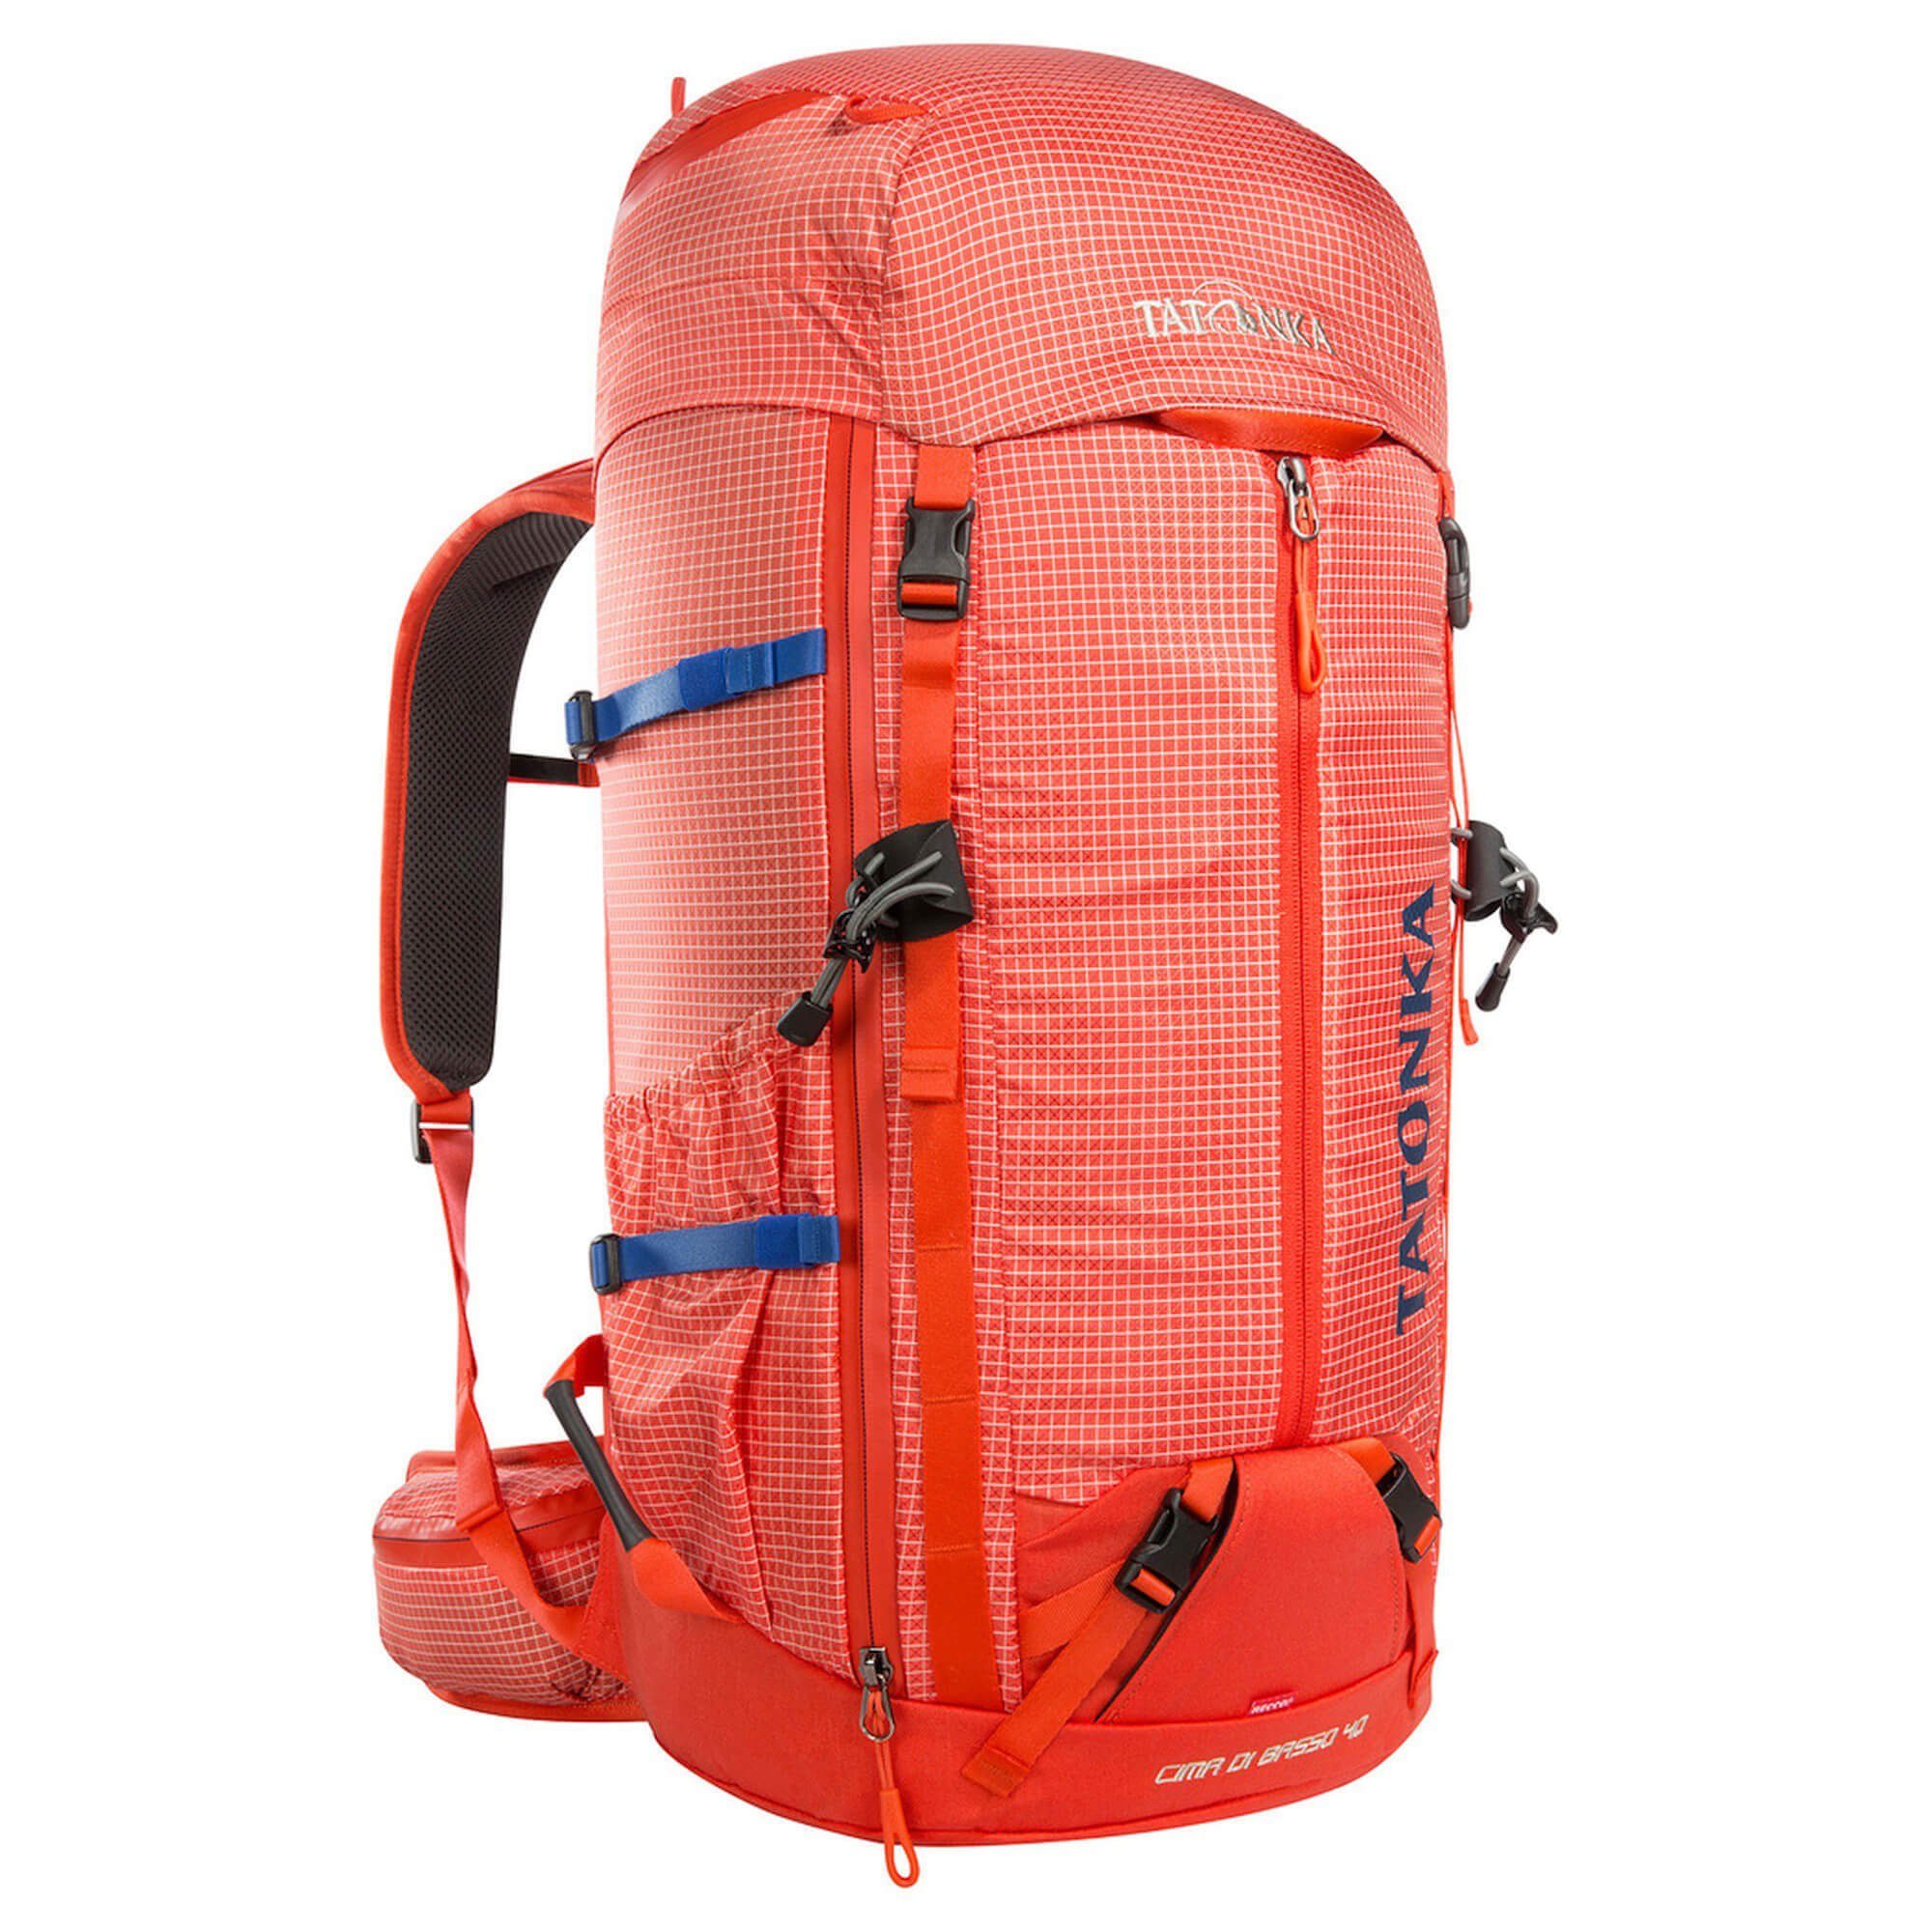 TATONKA® Trekkingrucksack Cima Di Basso 40 - Trekkingrucksack 62 cm red orange